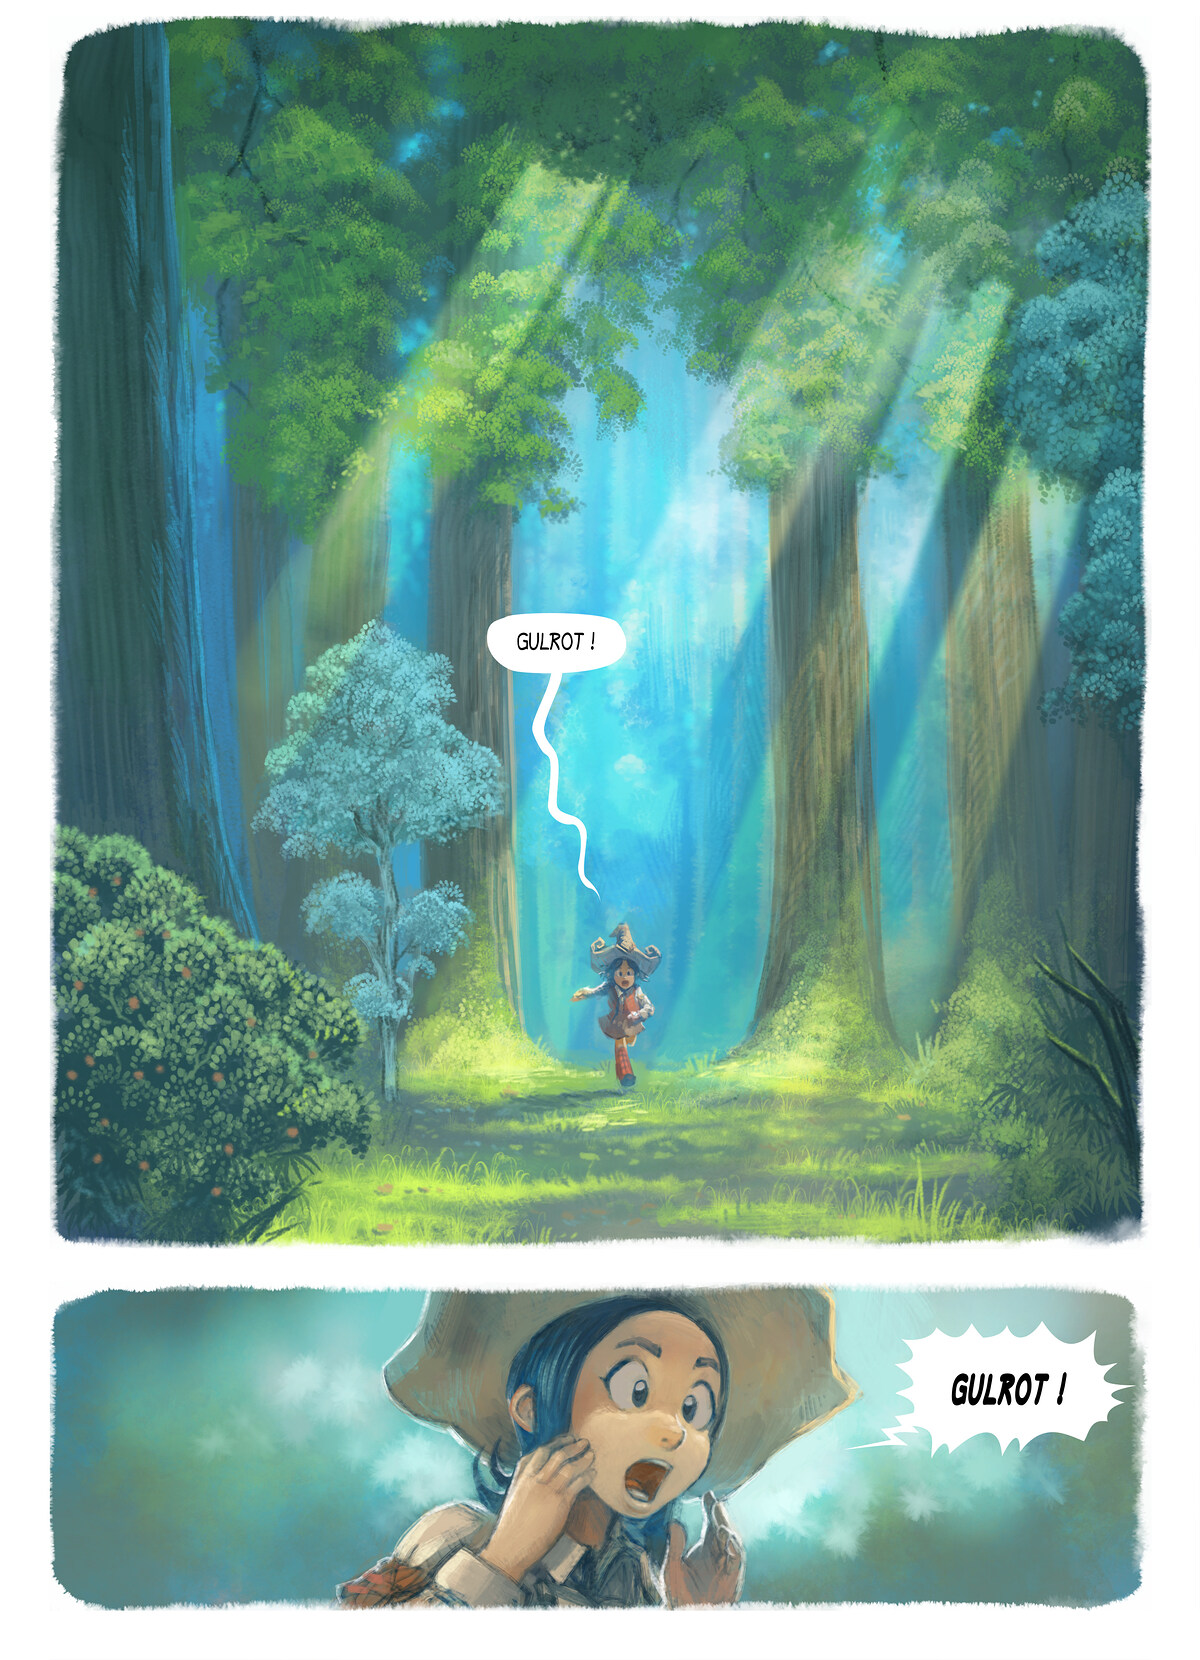 Episode 7: Ett ønske, Page 1